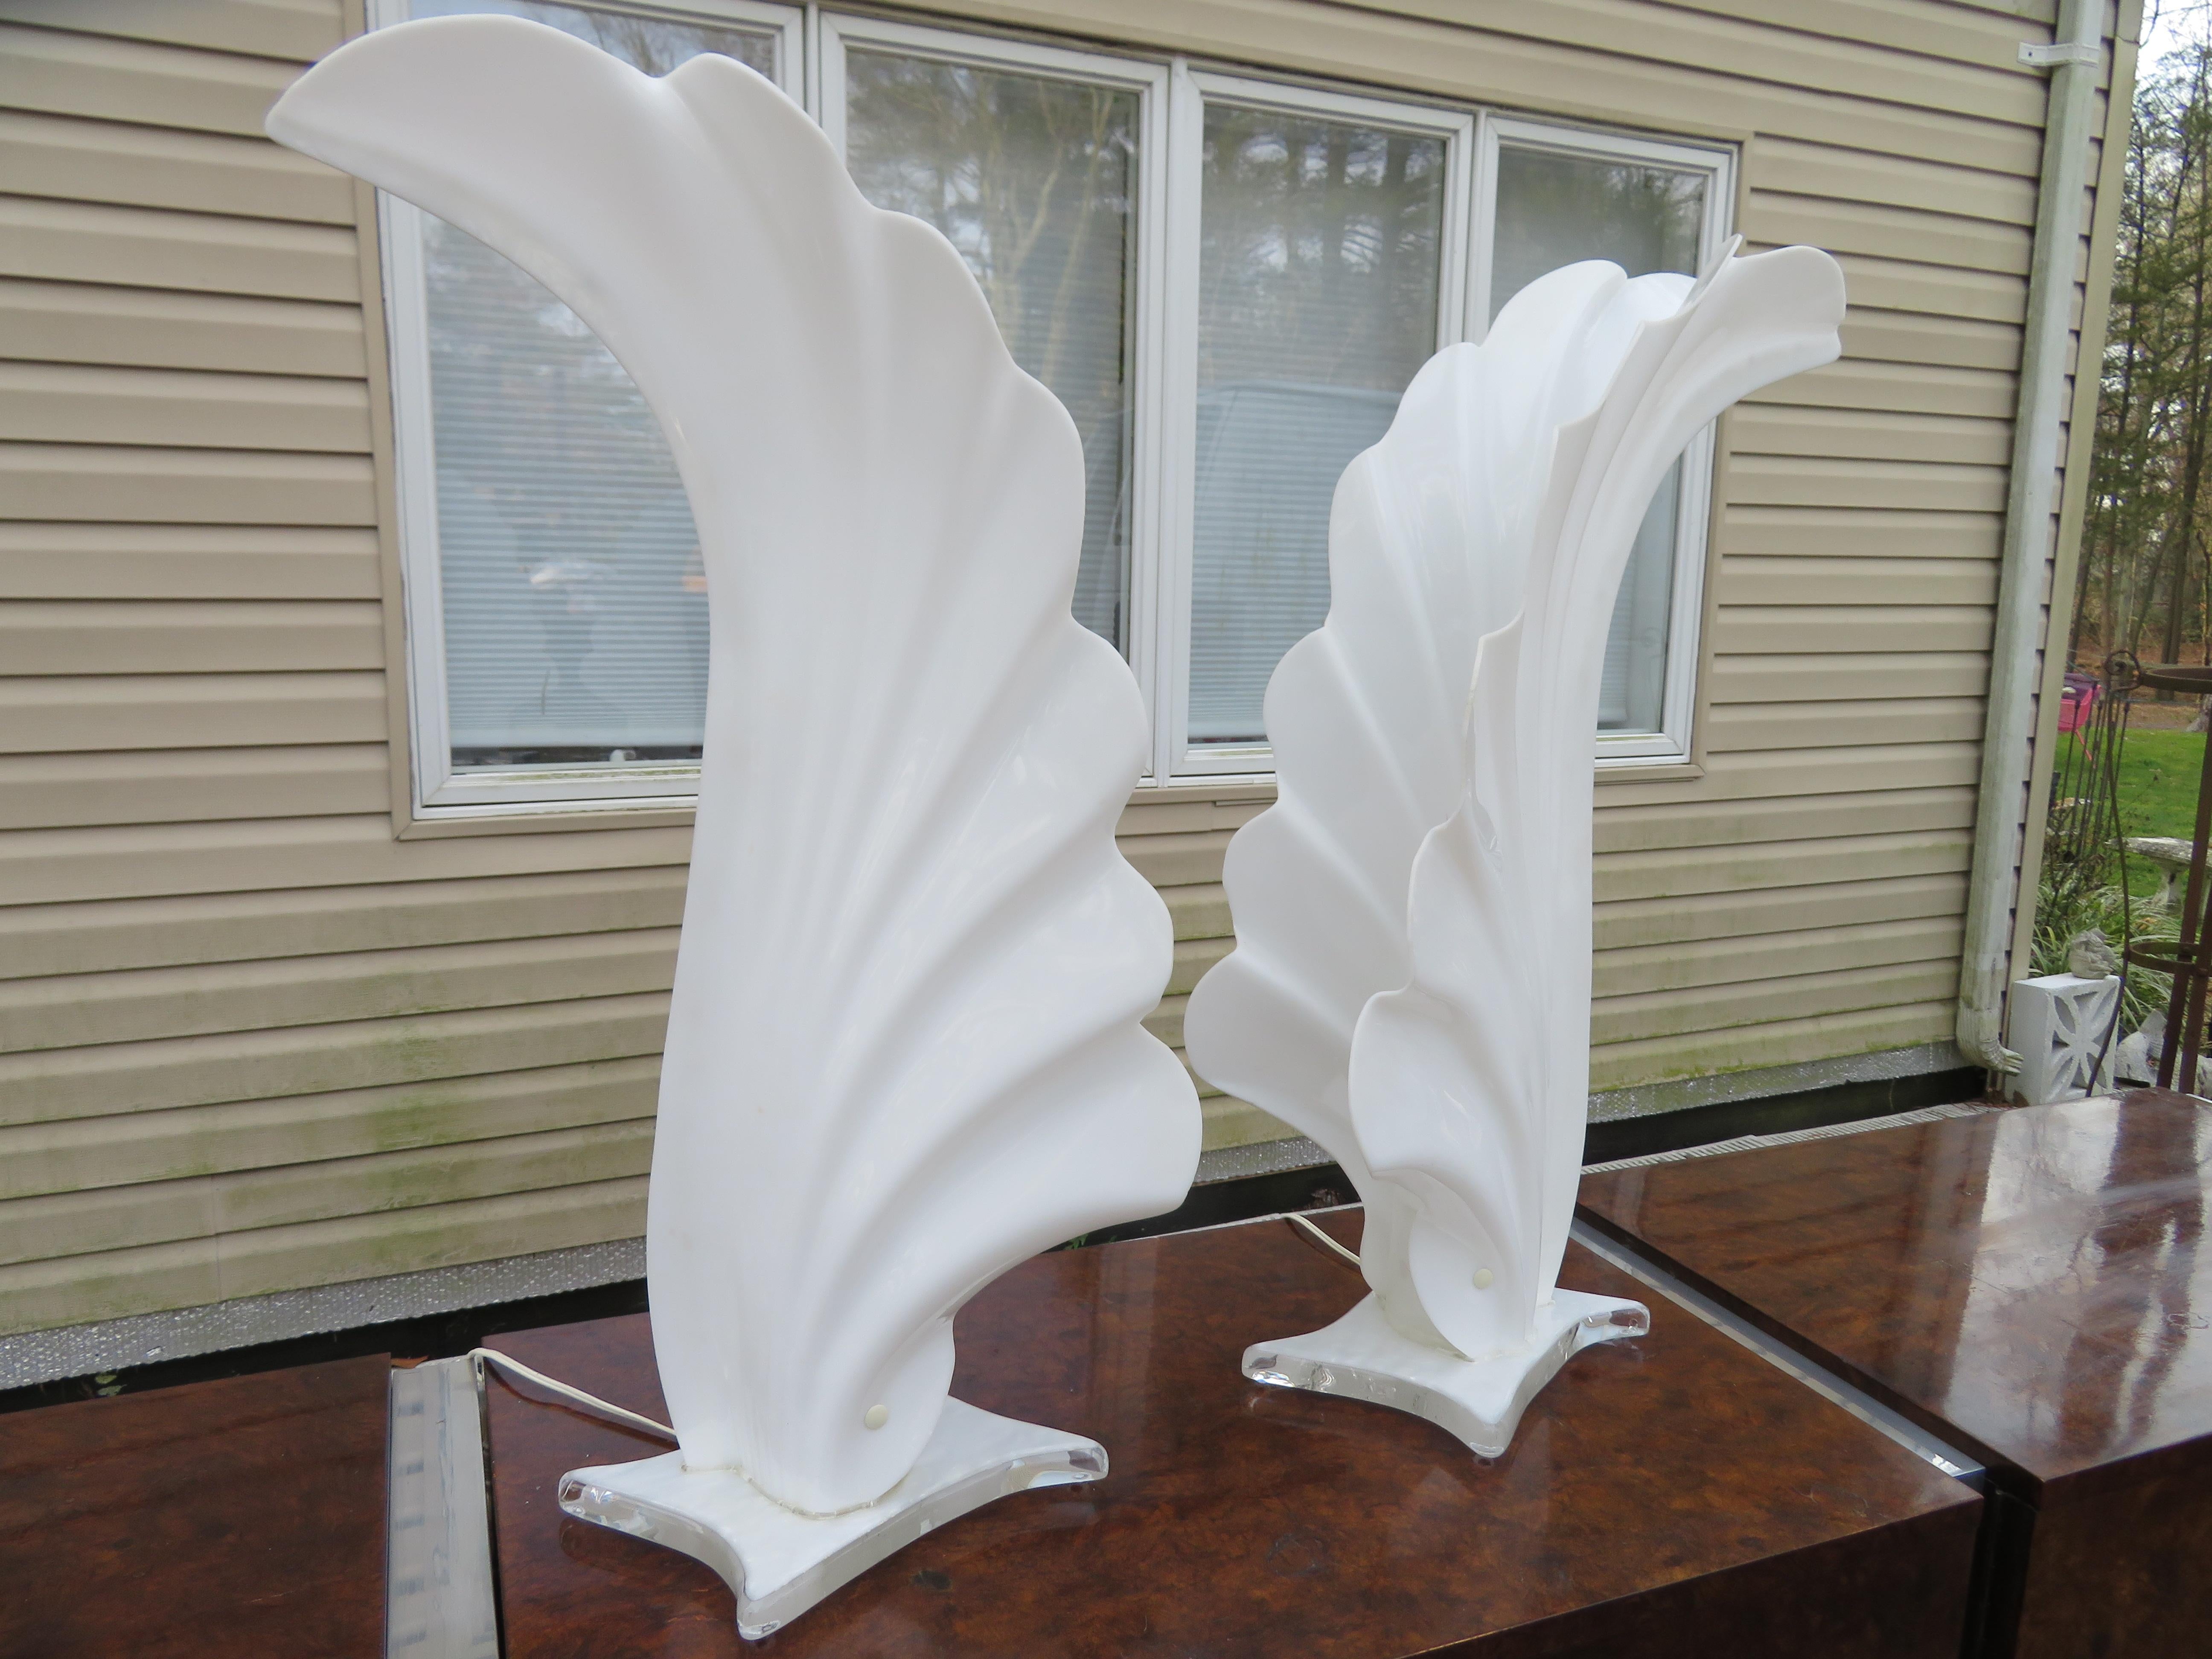 Superb Pair of Monumental White Acrylic Table Lamp von Rougier in Kanada hergestellt.
Original Vintage By Zustand
Für je 1 Glühbirne max. 60 Watt: 29